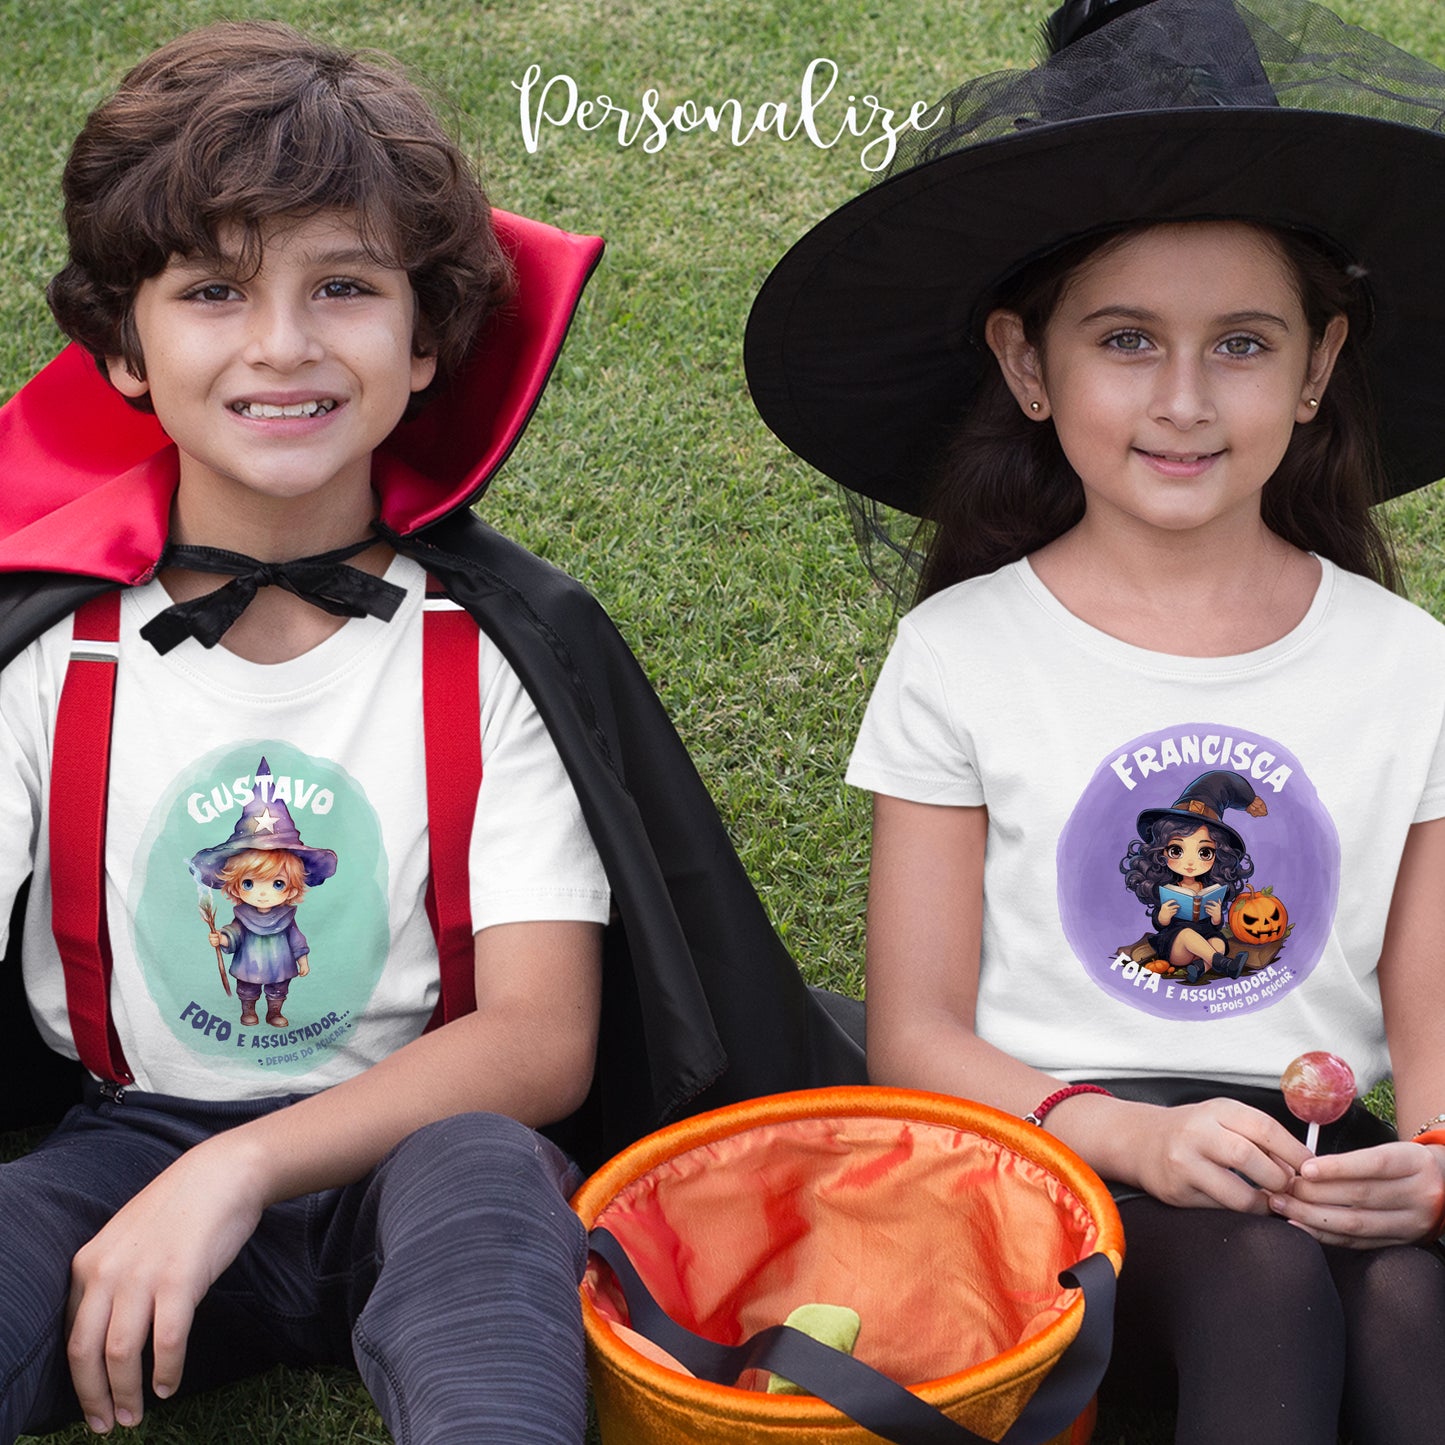 Camiseta "Fofa e assustadora" temática Halloween, é 100% algodão e pode ser personalizada a seu gosto.